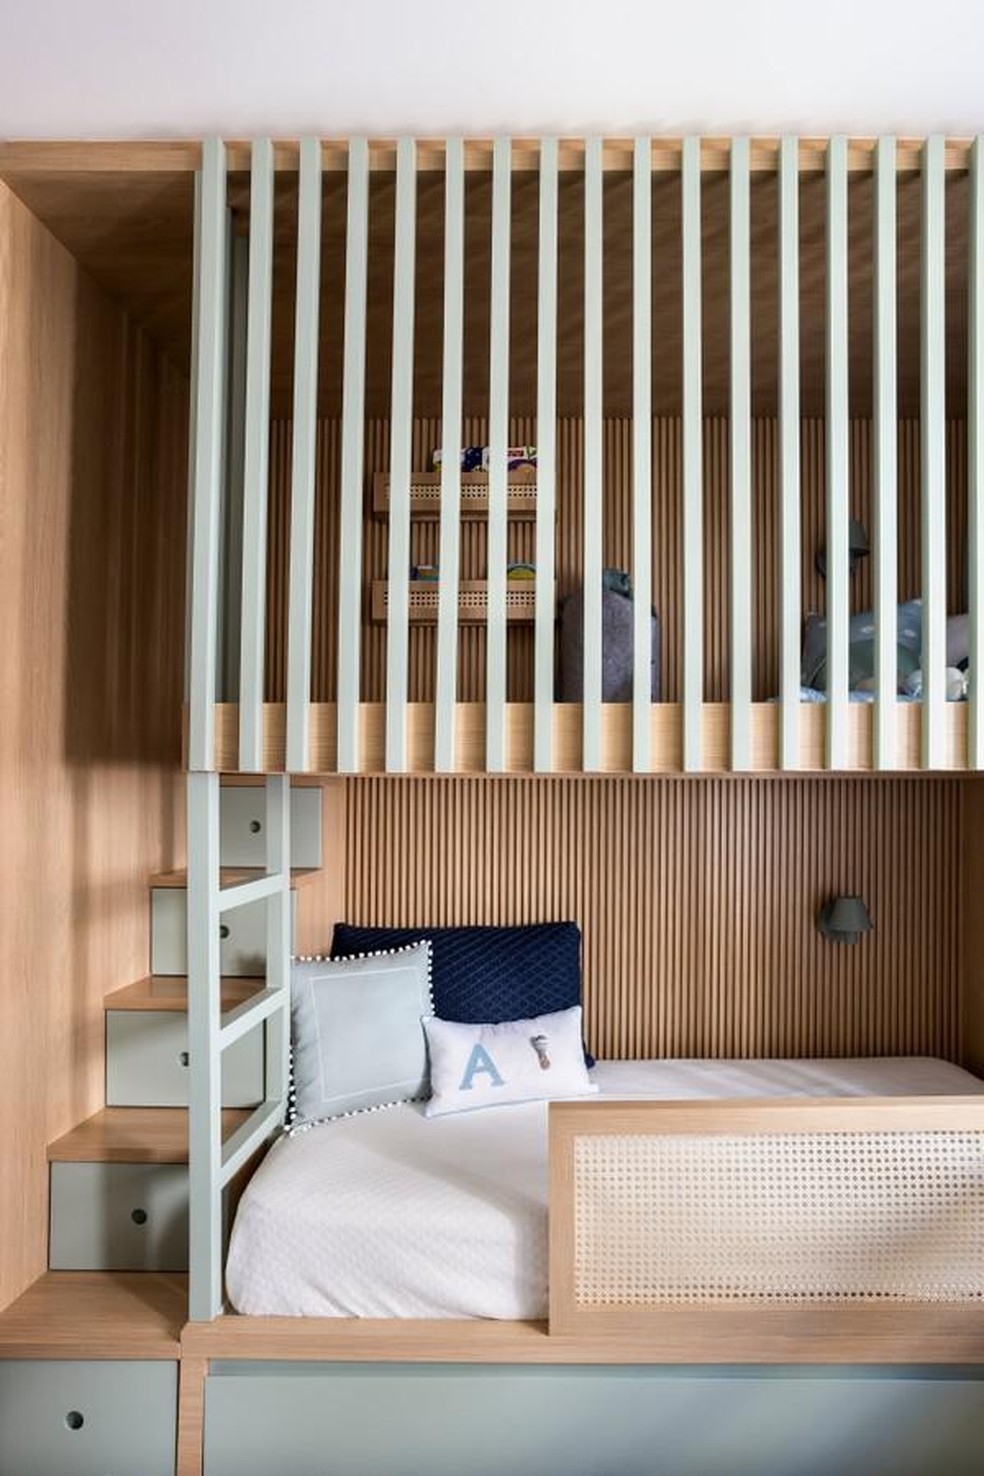 Marcenaria garante segurança ao brincar em espaço acima da cama (Foto: Renata D’Almeida/Divulgação) — Foto: Casa Vogue